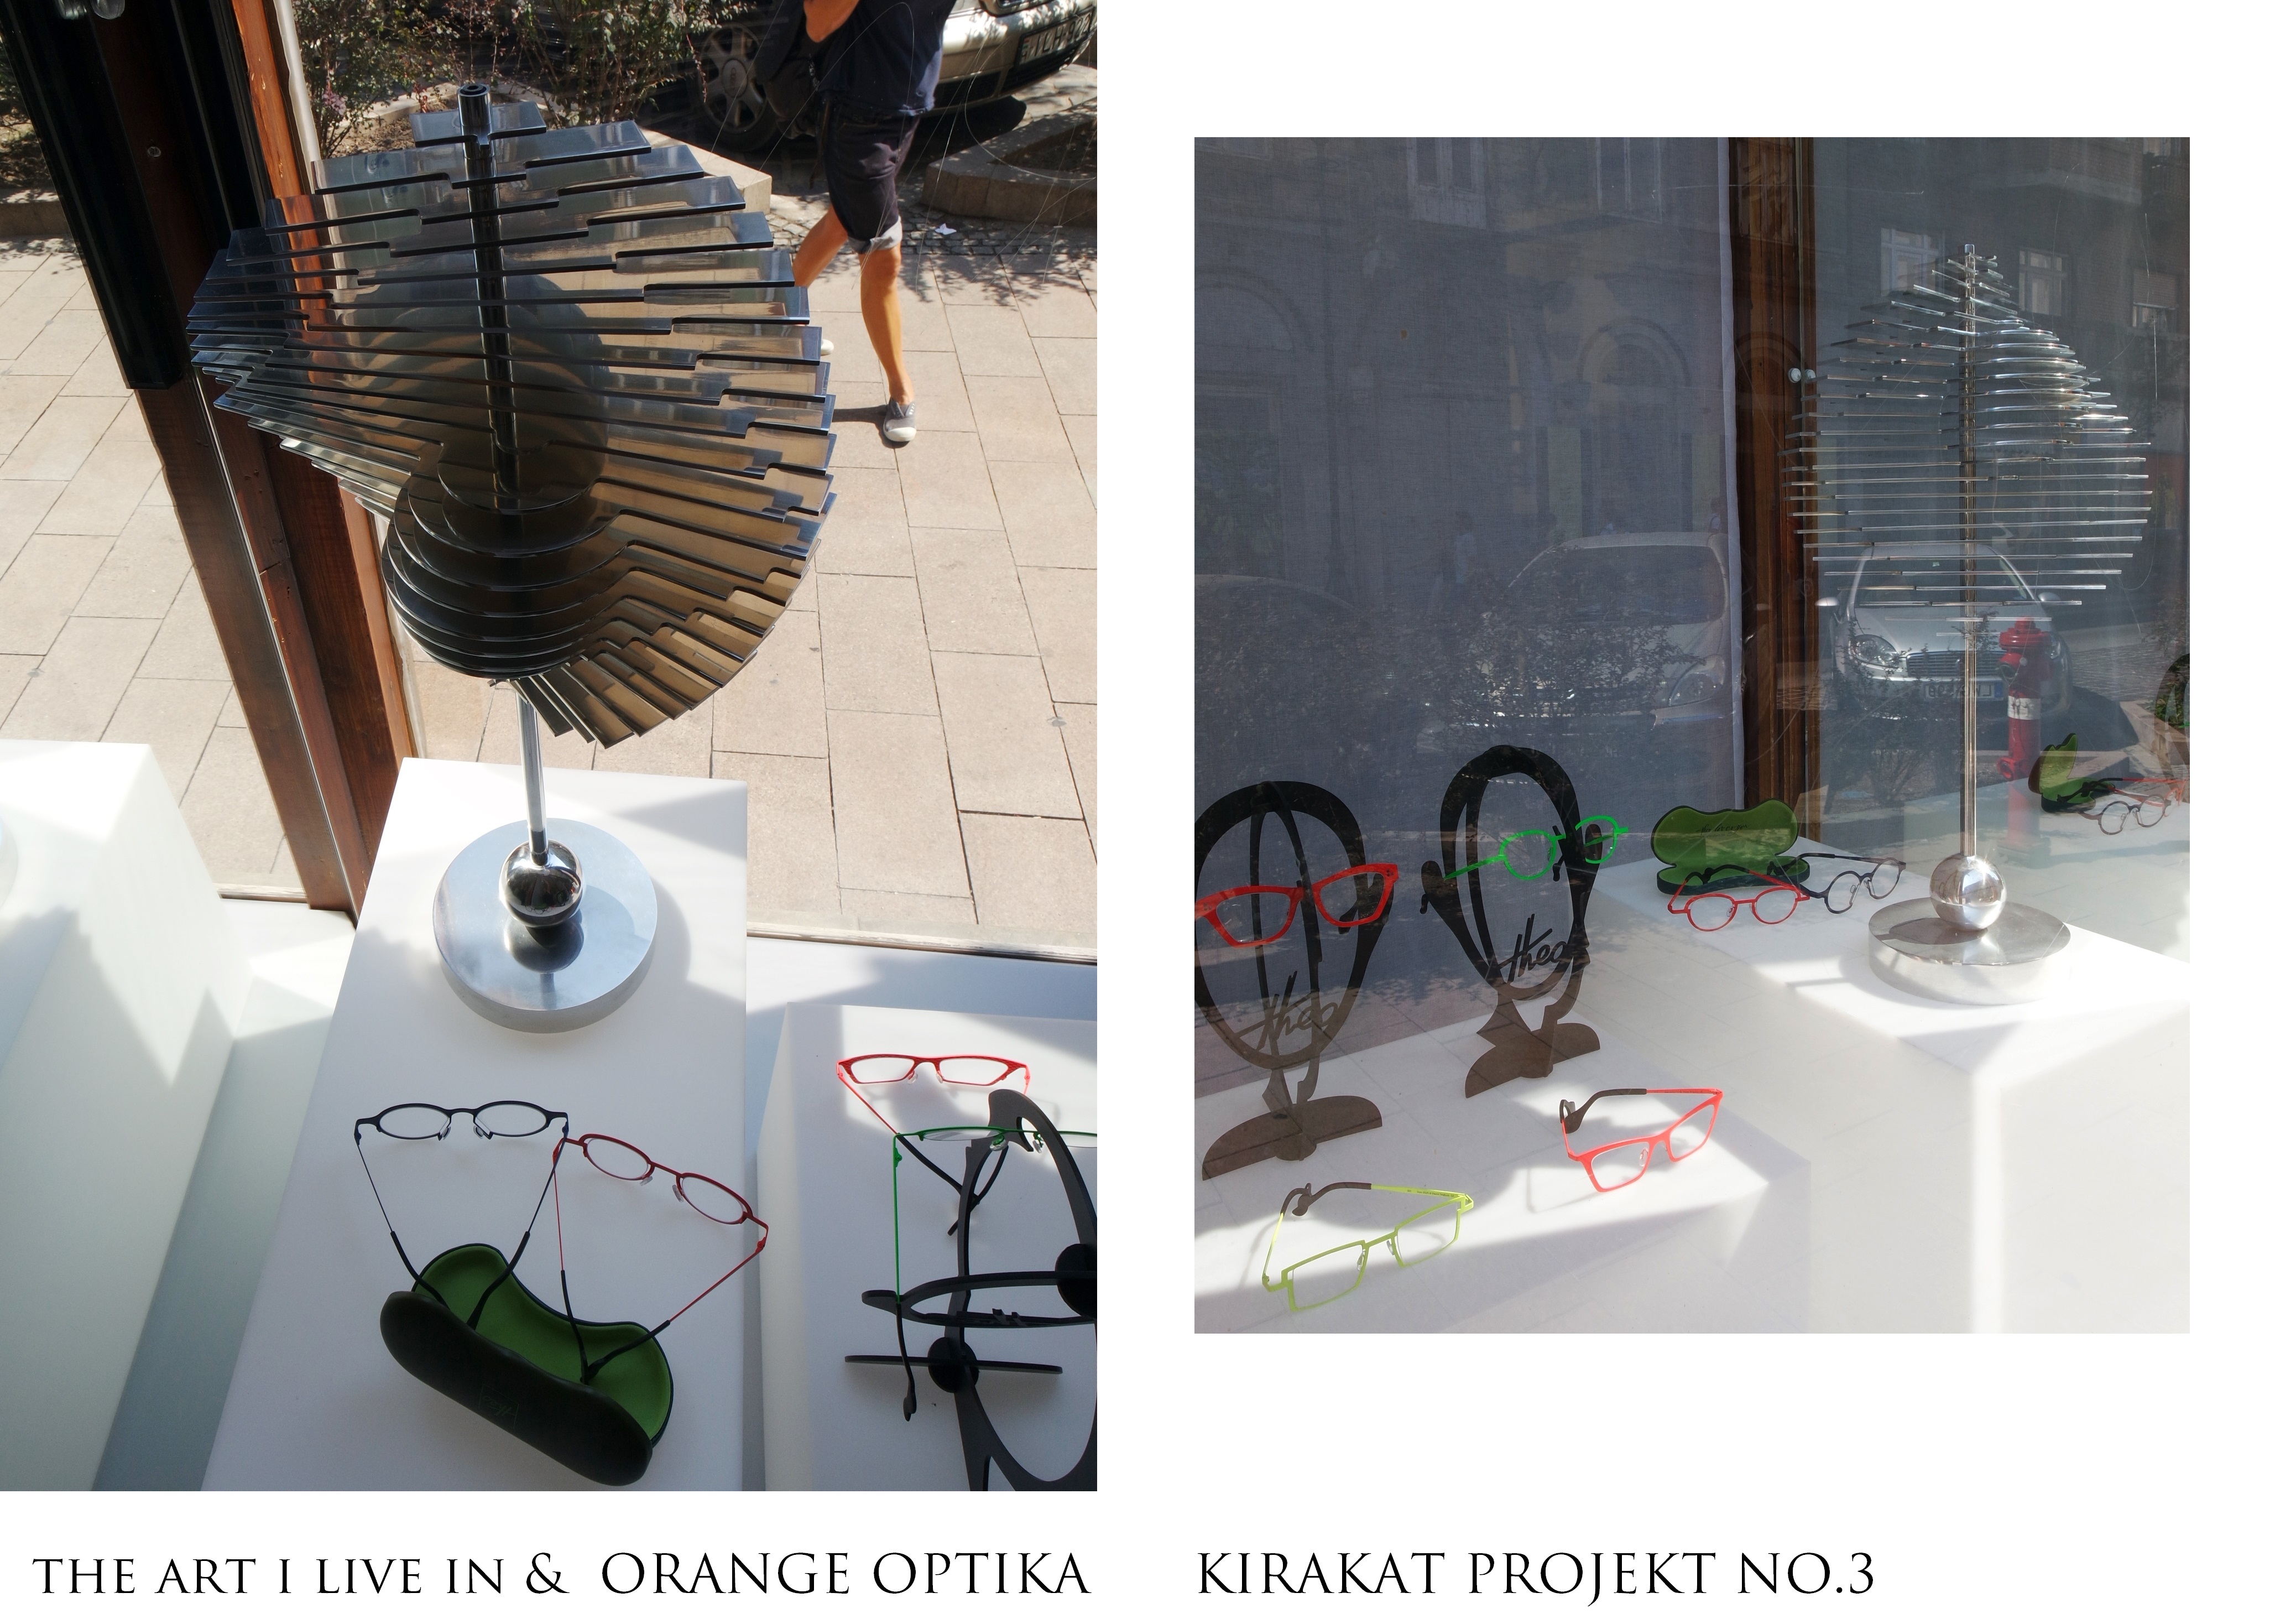 ART&FASHION: The Art I Live In & Orange Optika / Projekt NO.3